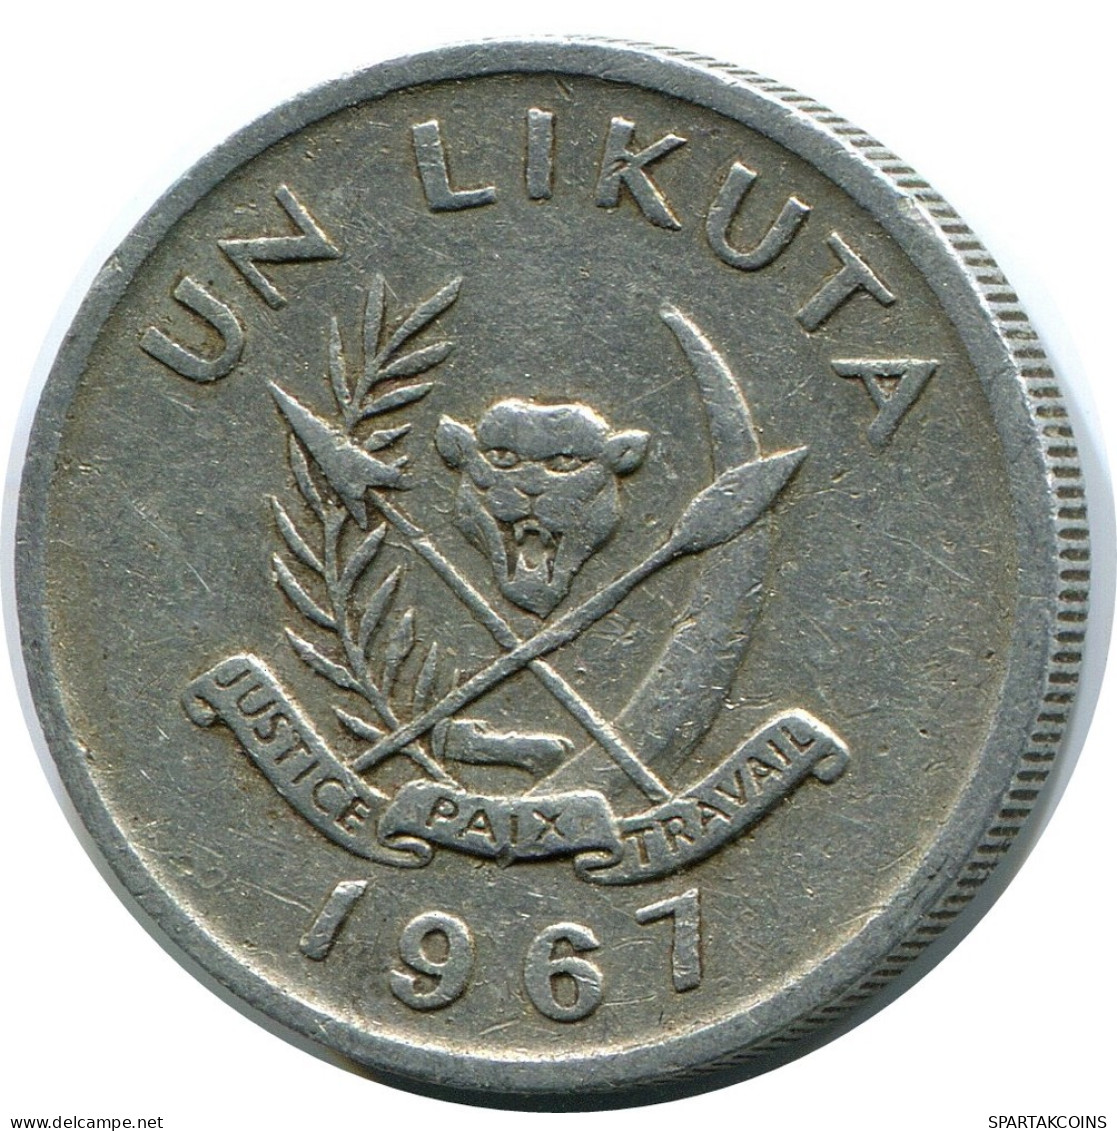 1 LIKUTA 1967 KONGO CONGO Münze #AP853.D.A - Kongo - Zaire (Dem. Republik, 1964-70)